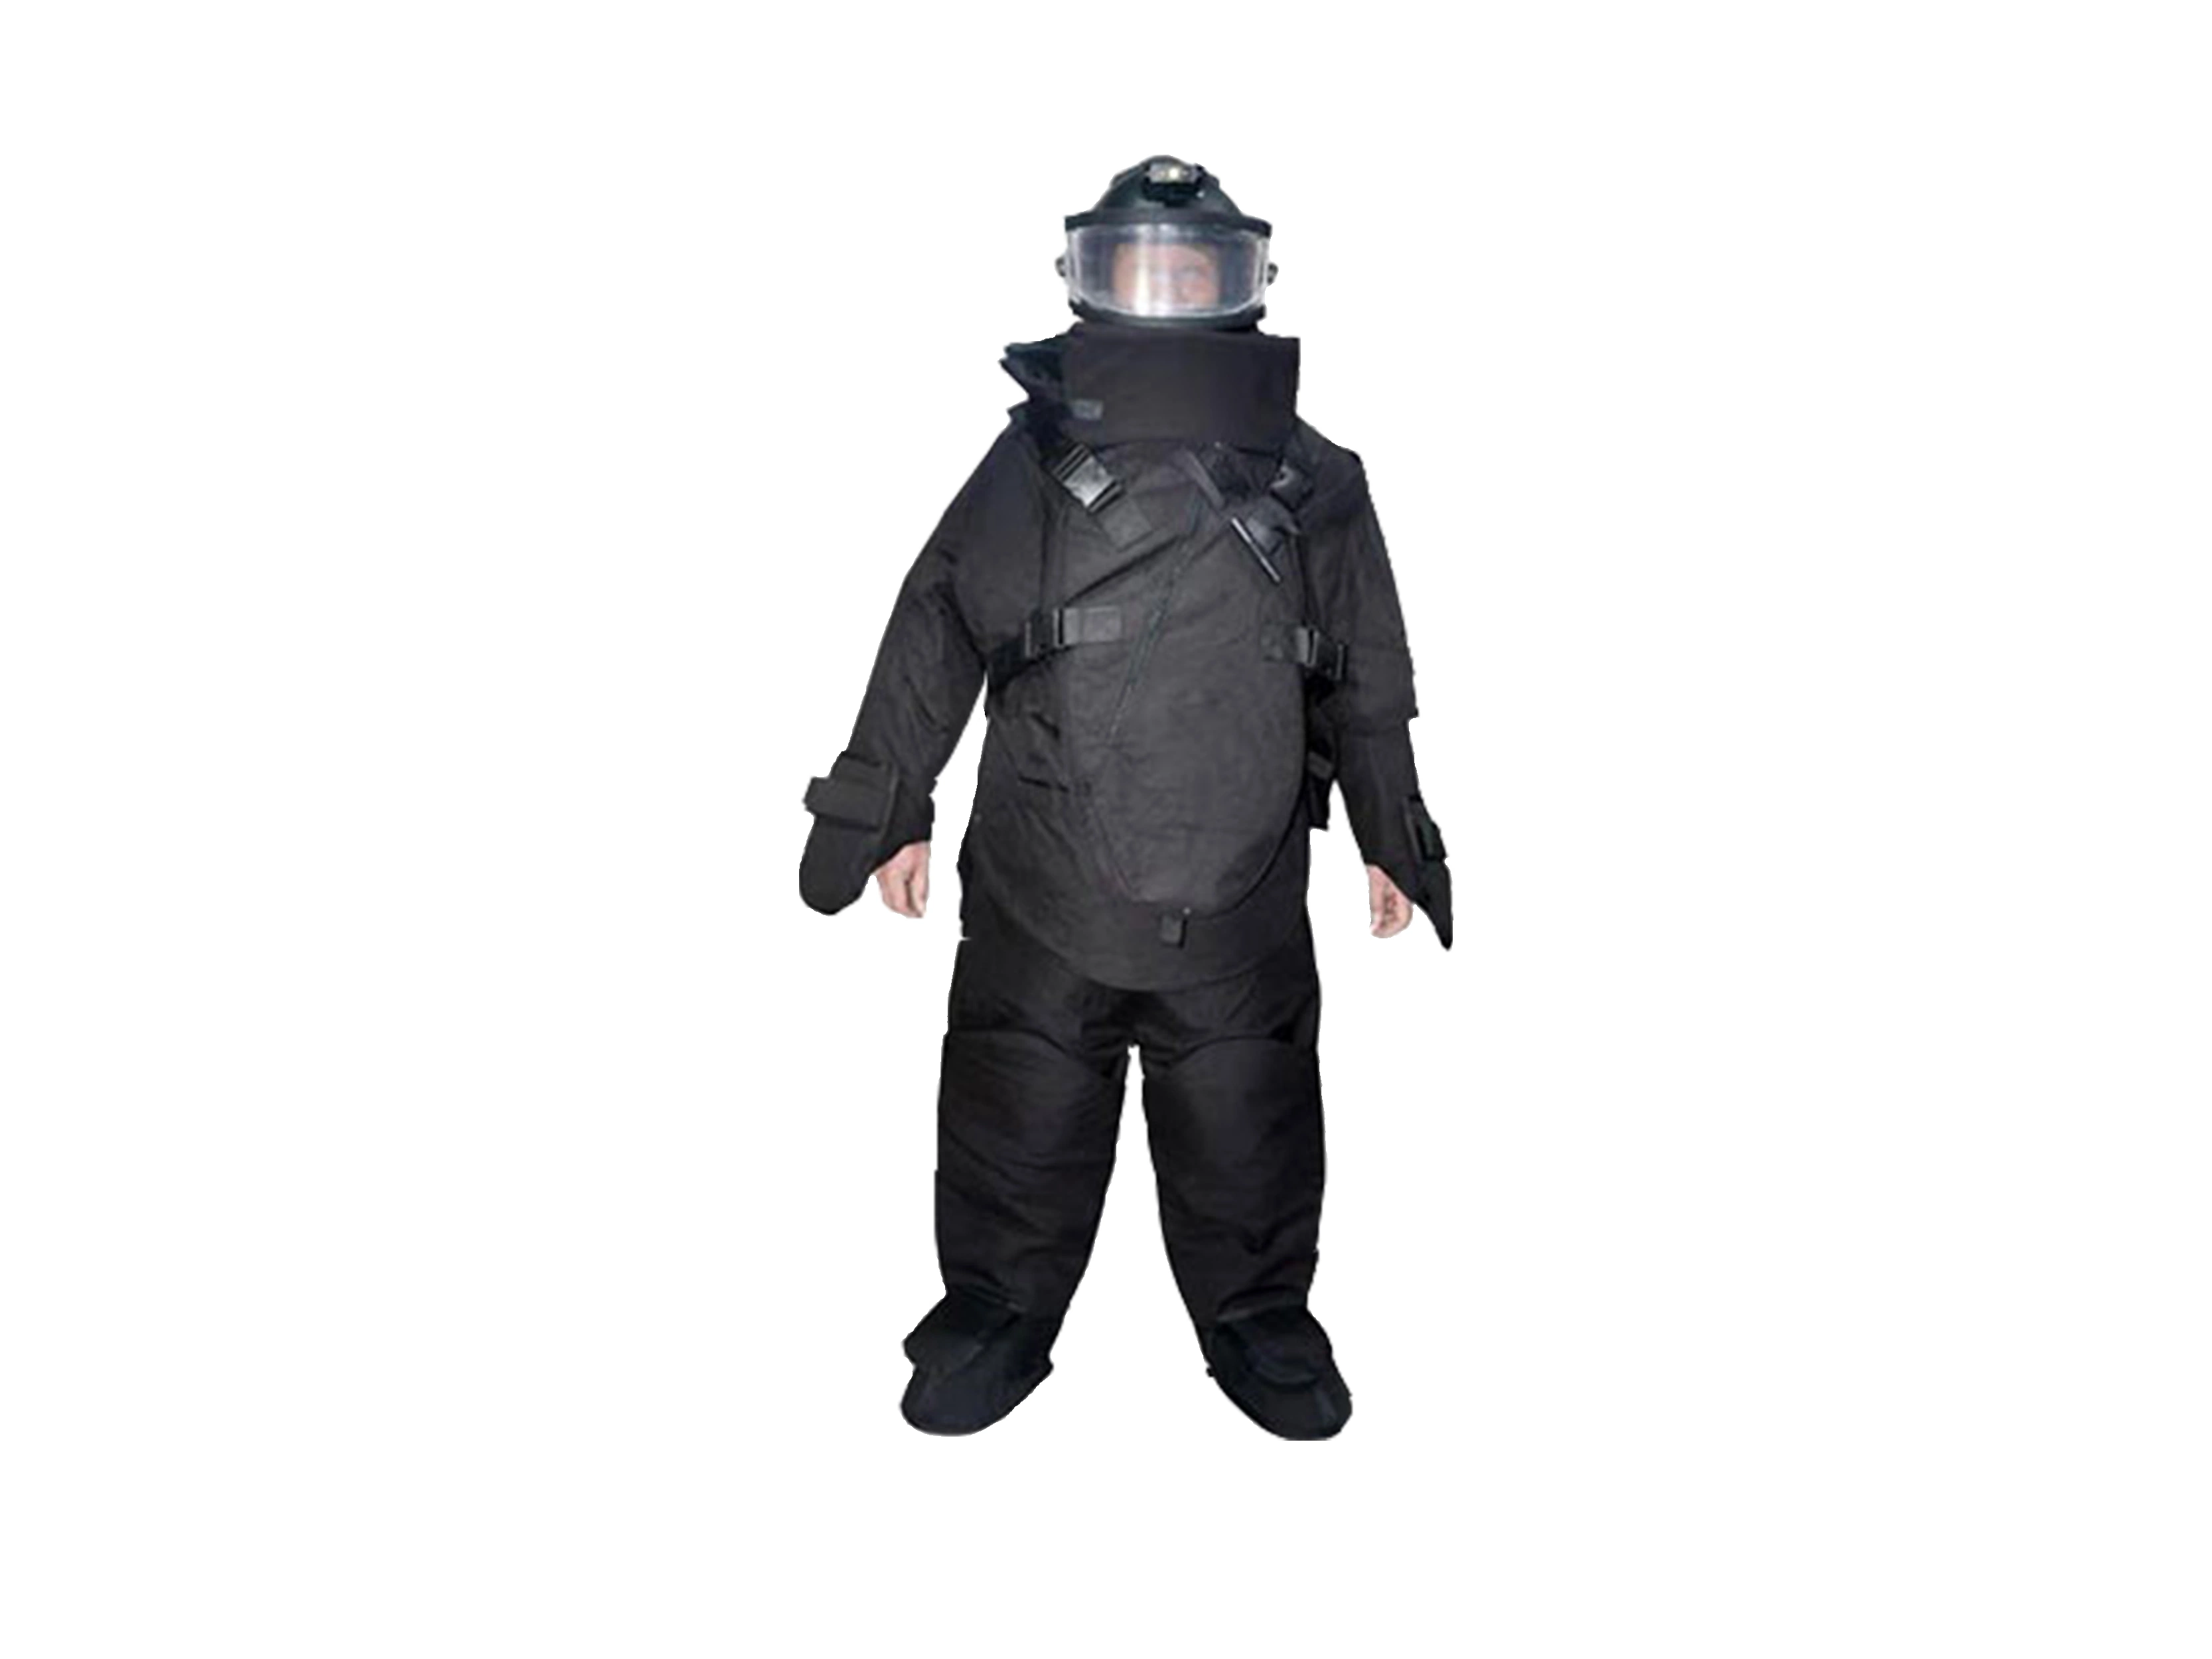 RB-Pbf01 buena calidad EOD Explosive Disposal Black Disposal Bomb Suit Traje de seguridad